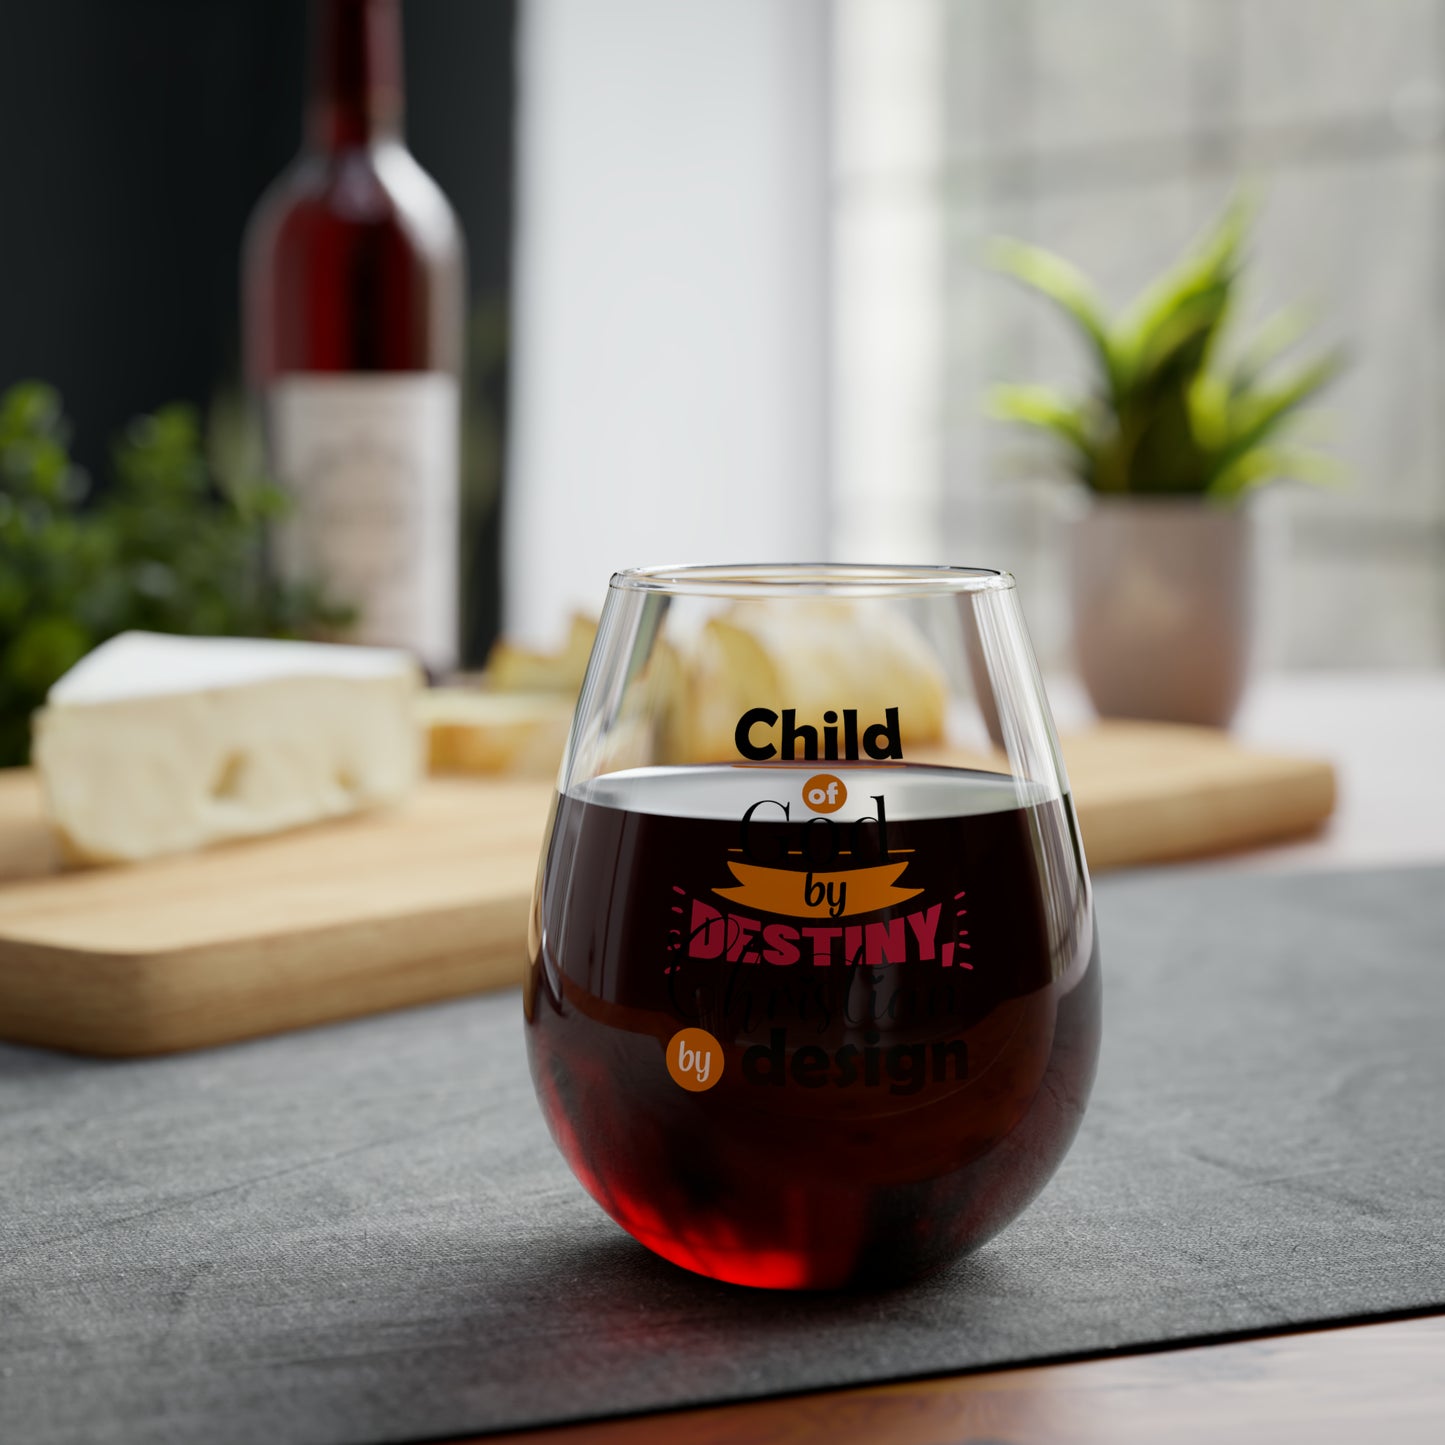 Child Of God By Destiny Christian By Design Stemless Wine Glass, 11.75oz